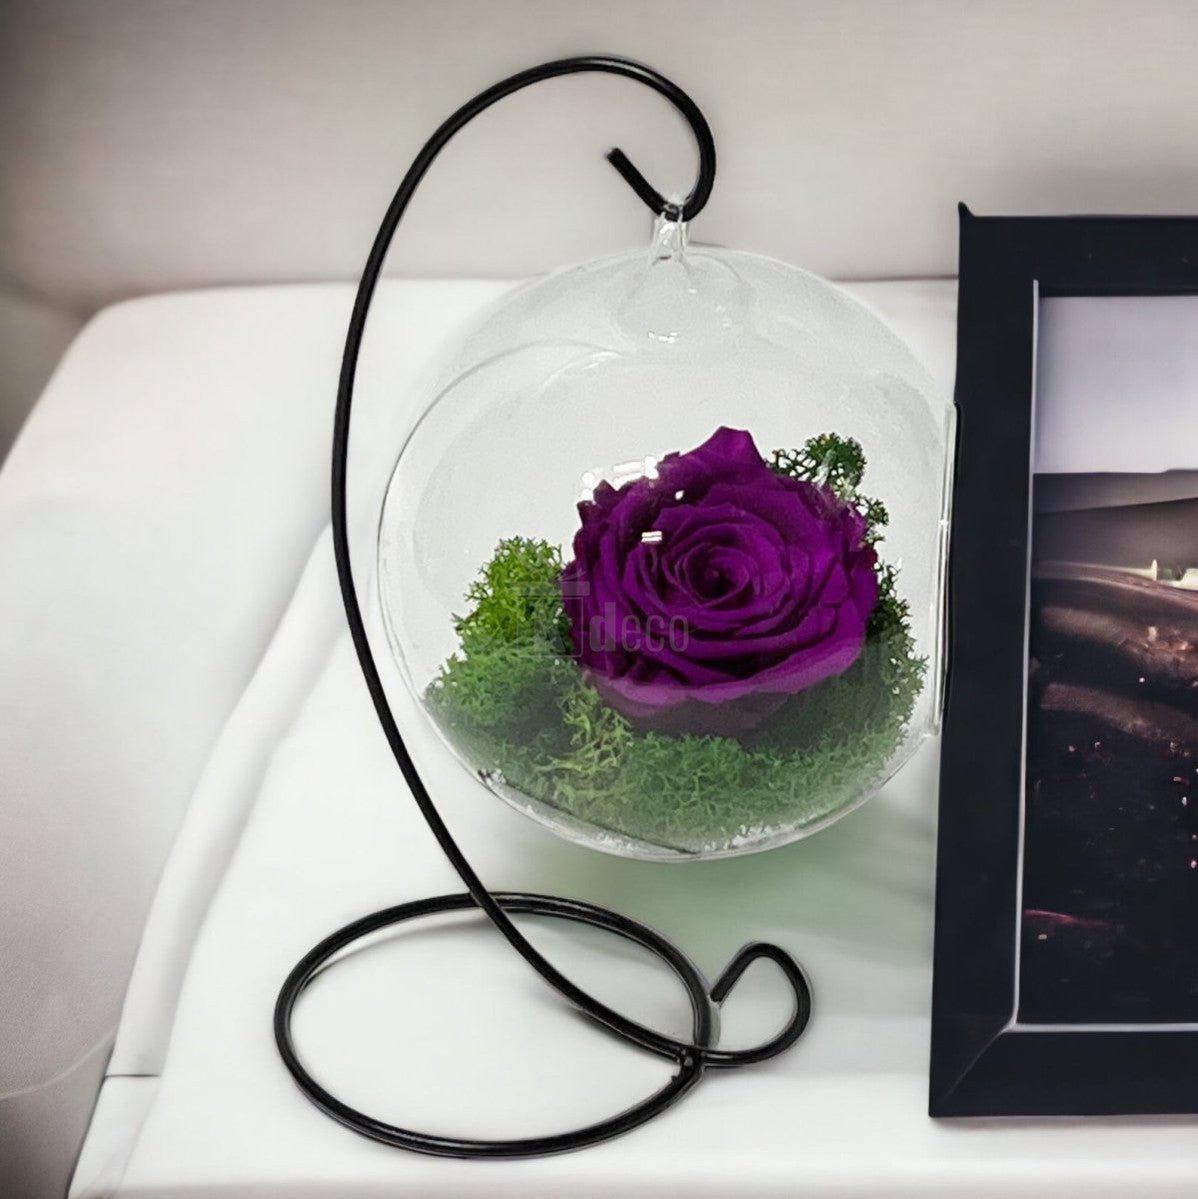 Trandafir Criogenat Nemuritor purpuriu XL în Glob de Sticlă Suspendat 12cm - Rezistă 25 de Ani - Kdeco.ro